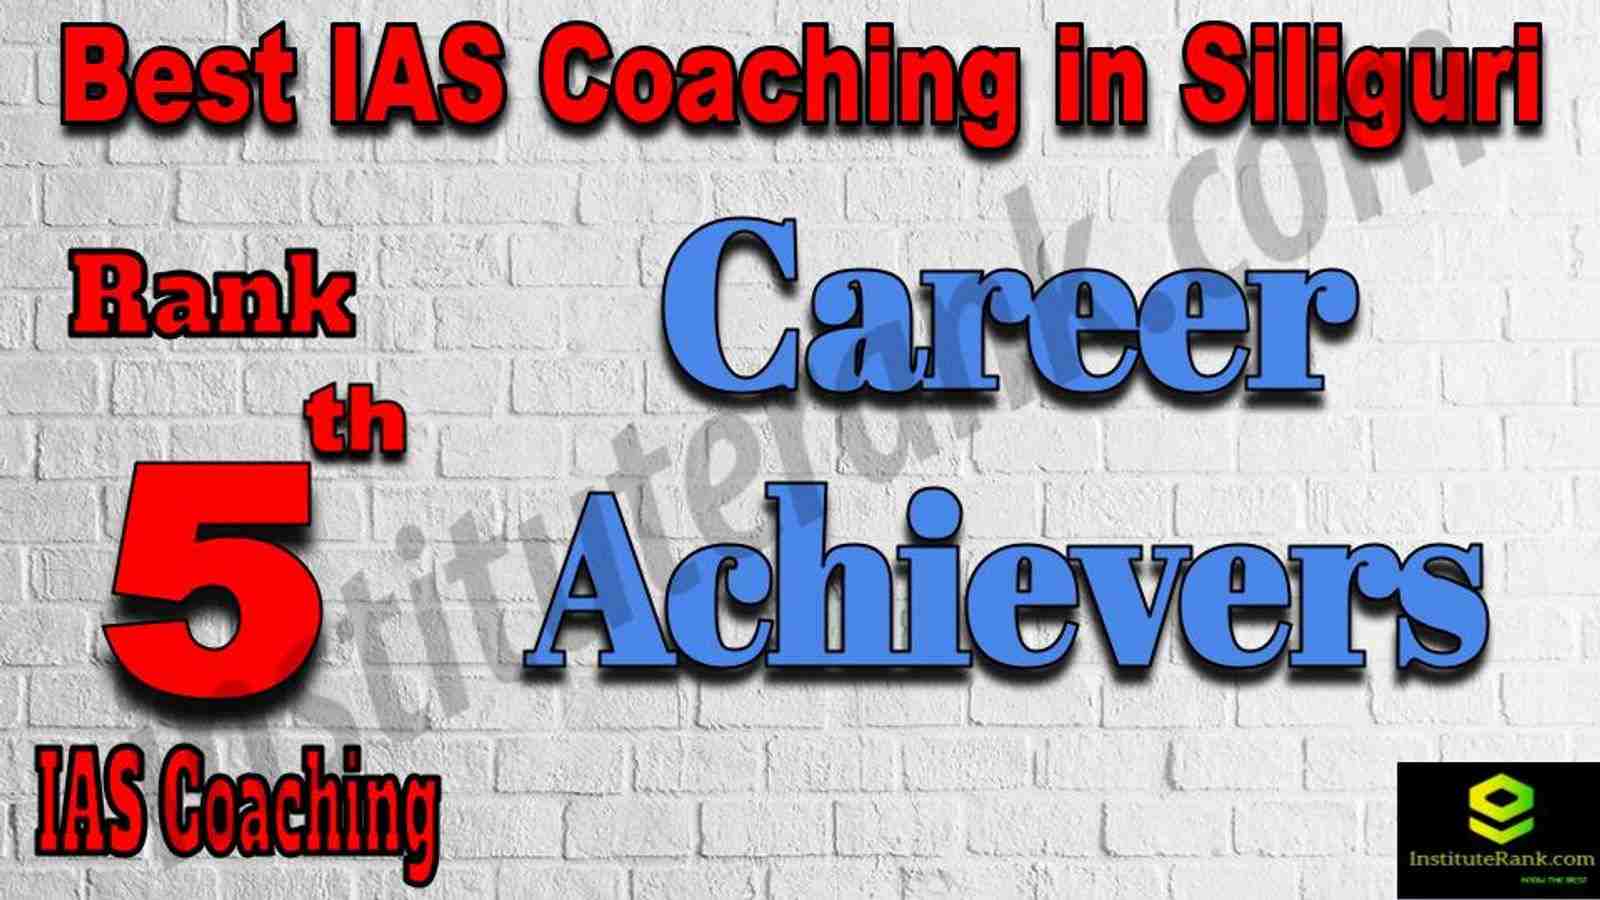 5th Best IAS Coaching in Siliguri